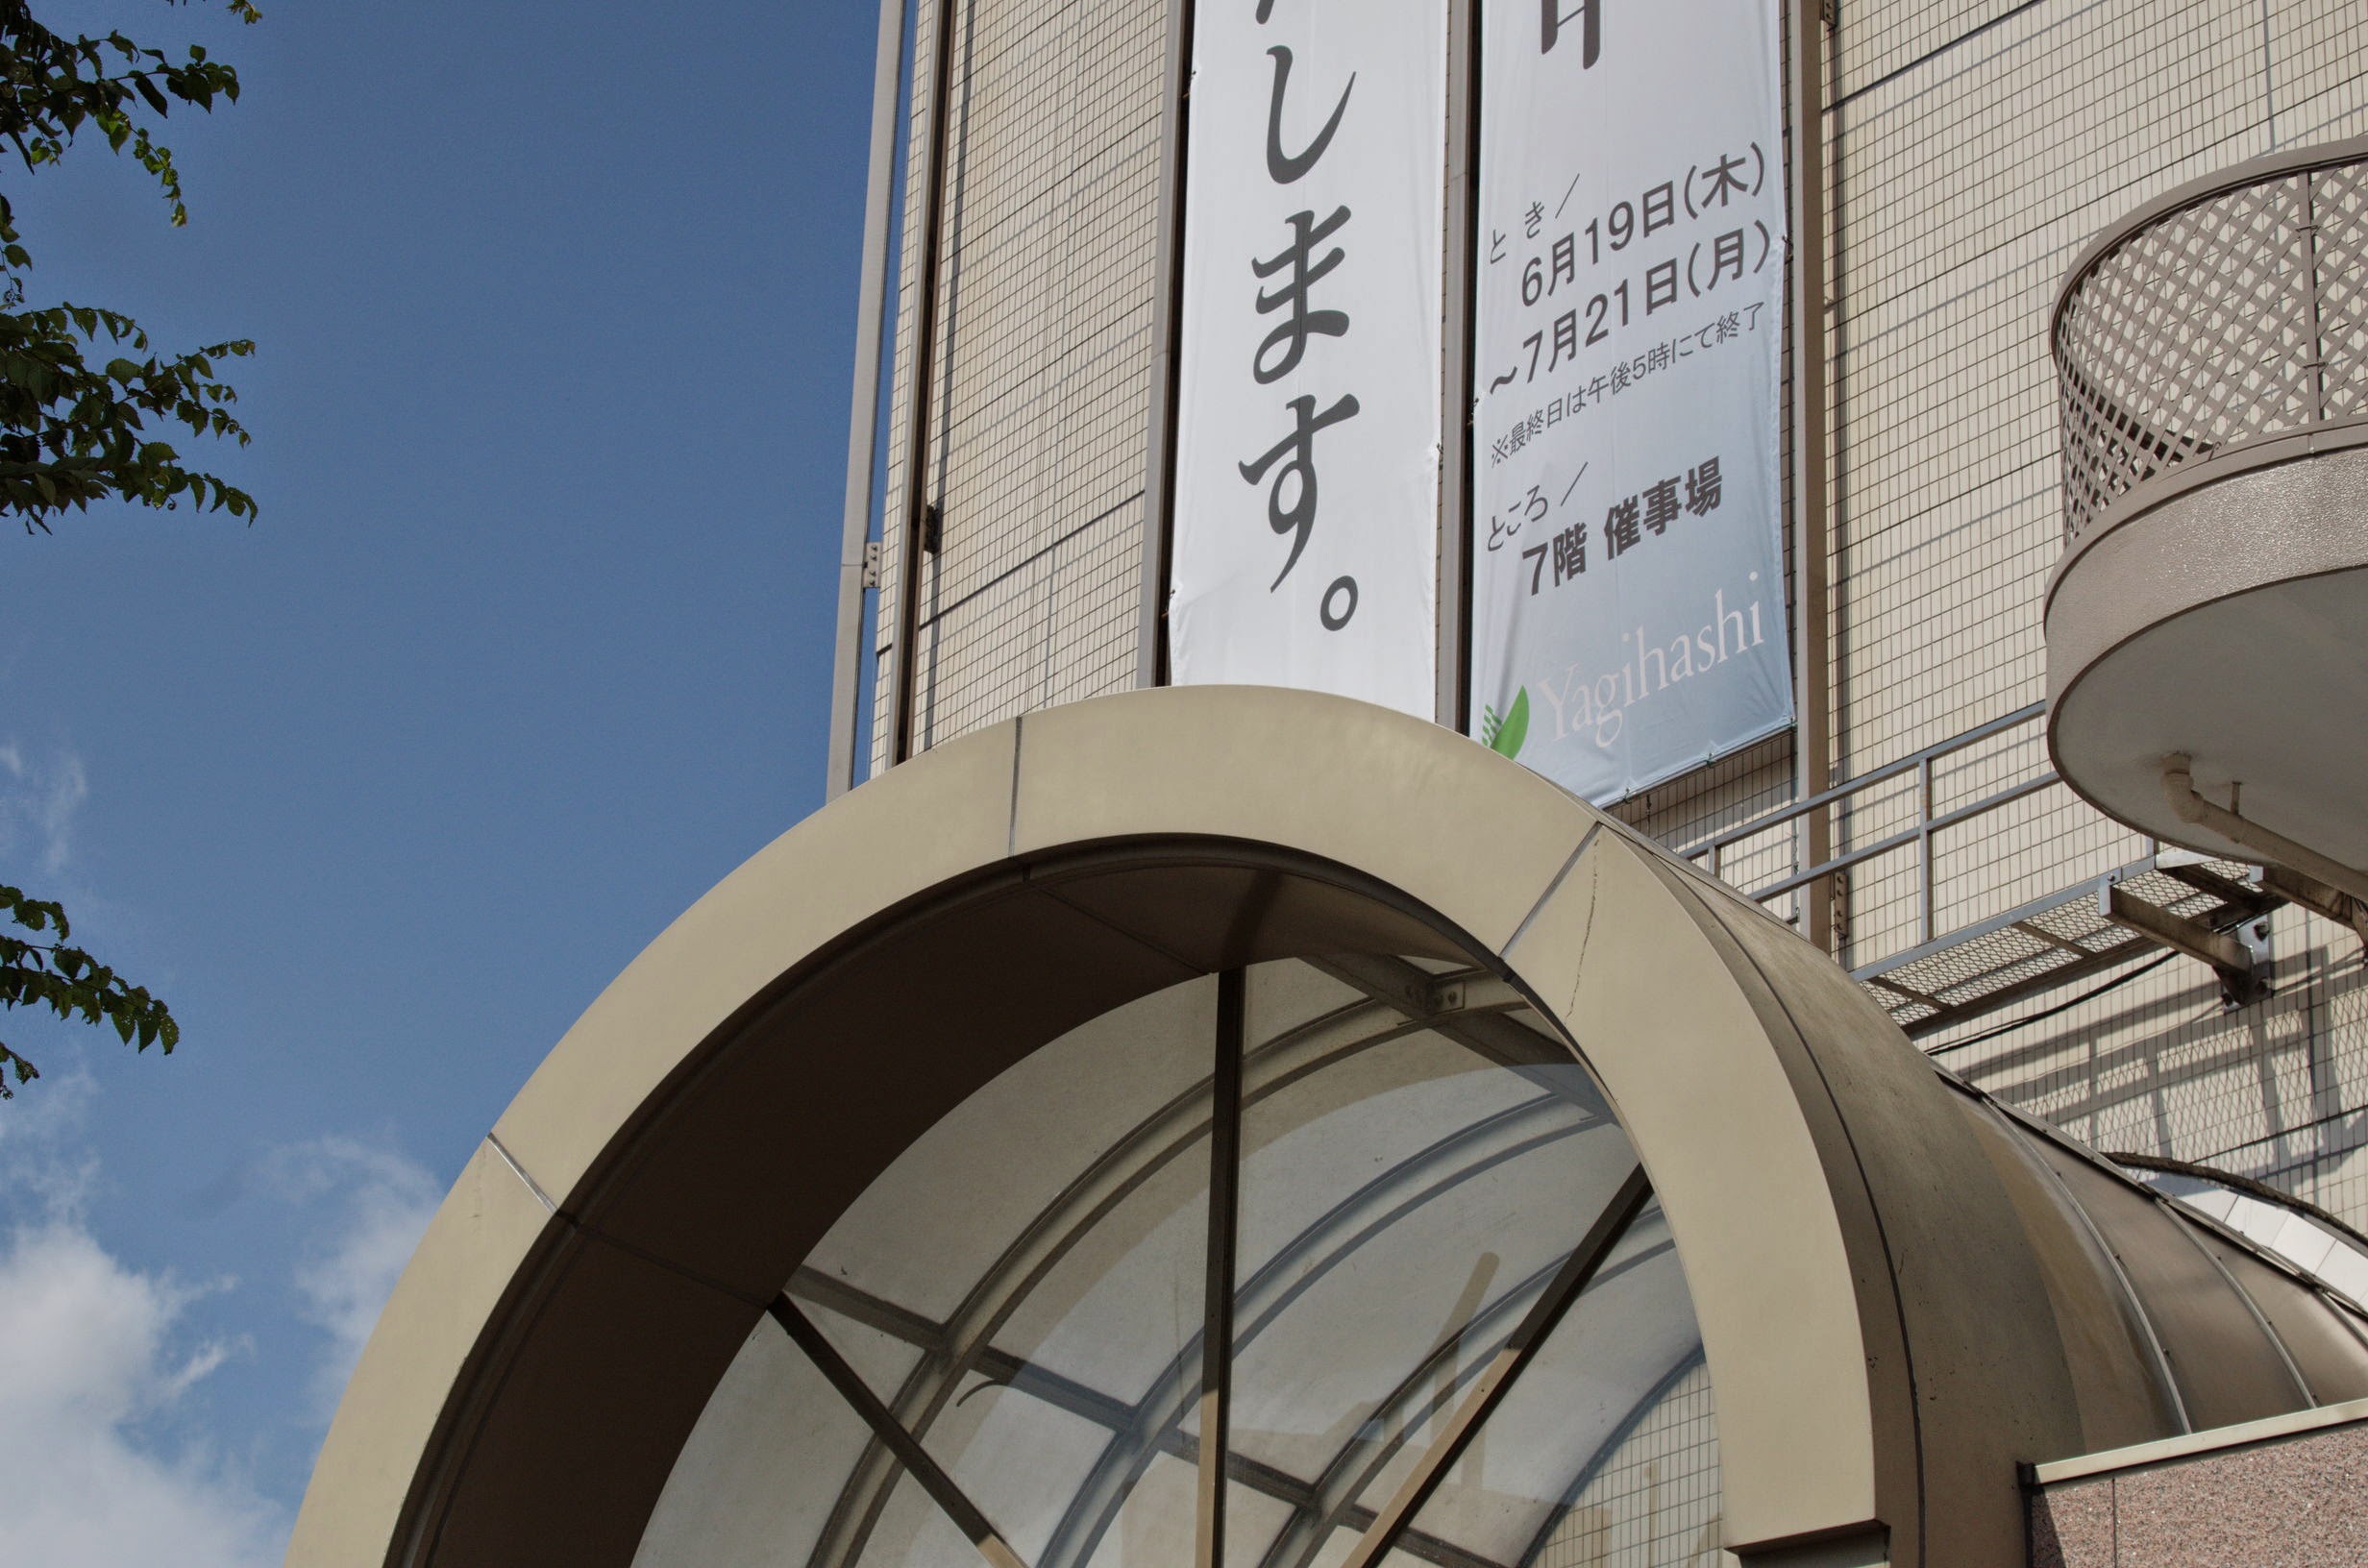 File Yagihashi Department Store 八木橋百貨店 Panoramio Jpg Wikimedia Commons